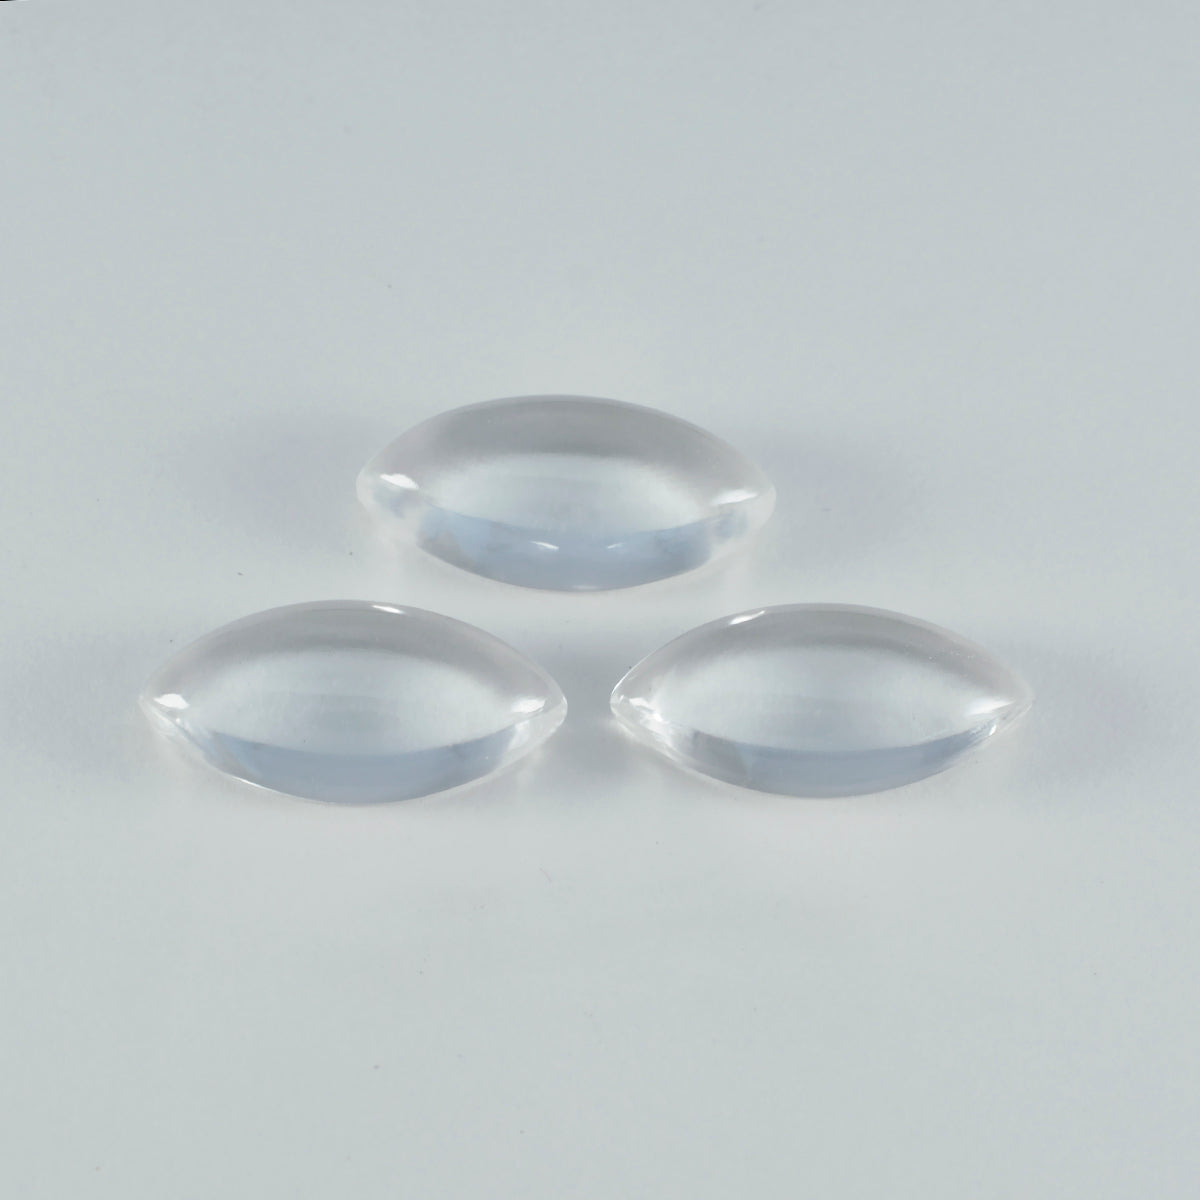 Riyogems 1 Stück weißer Kristallquarz-Cabochon, 7 x 14 mm, Marquise-Form, hübsche Qualitätsedelsteine